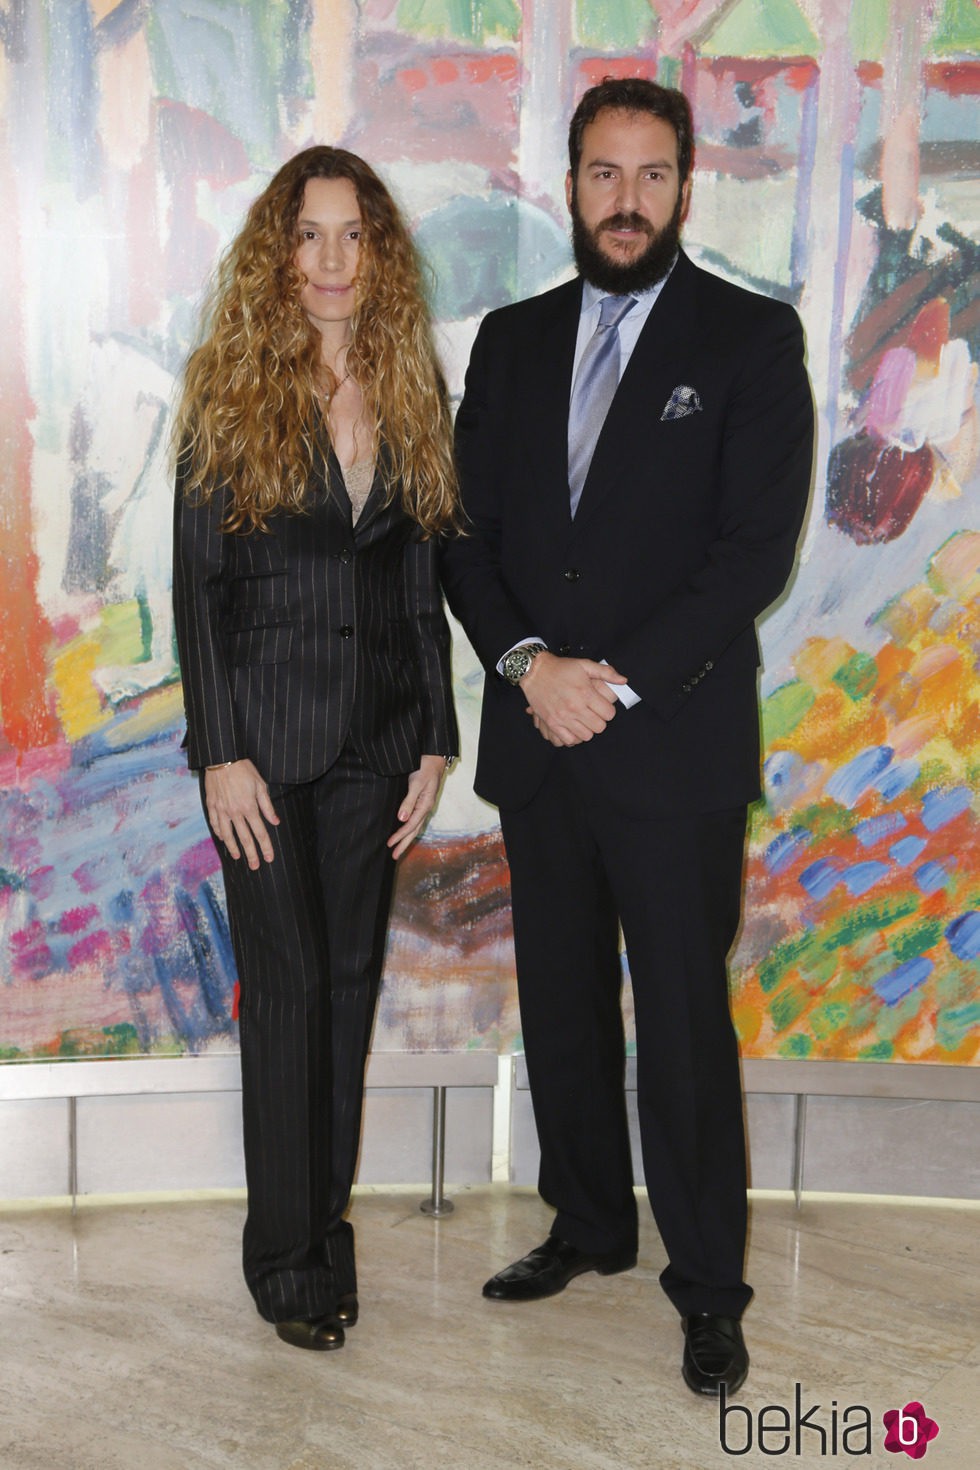 Blanca Cuesta y Borja Thyssen en la inauguración de la exposición de Raoul Dufy en el Museo Thyssen